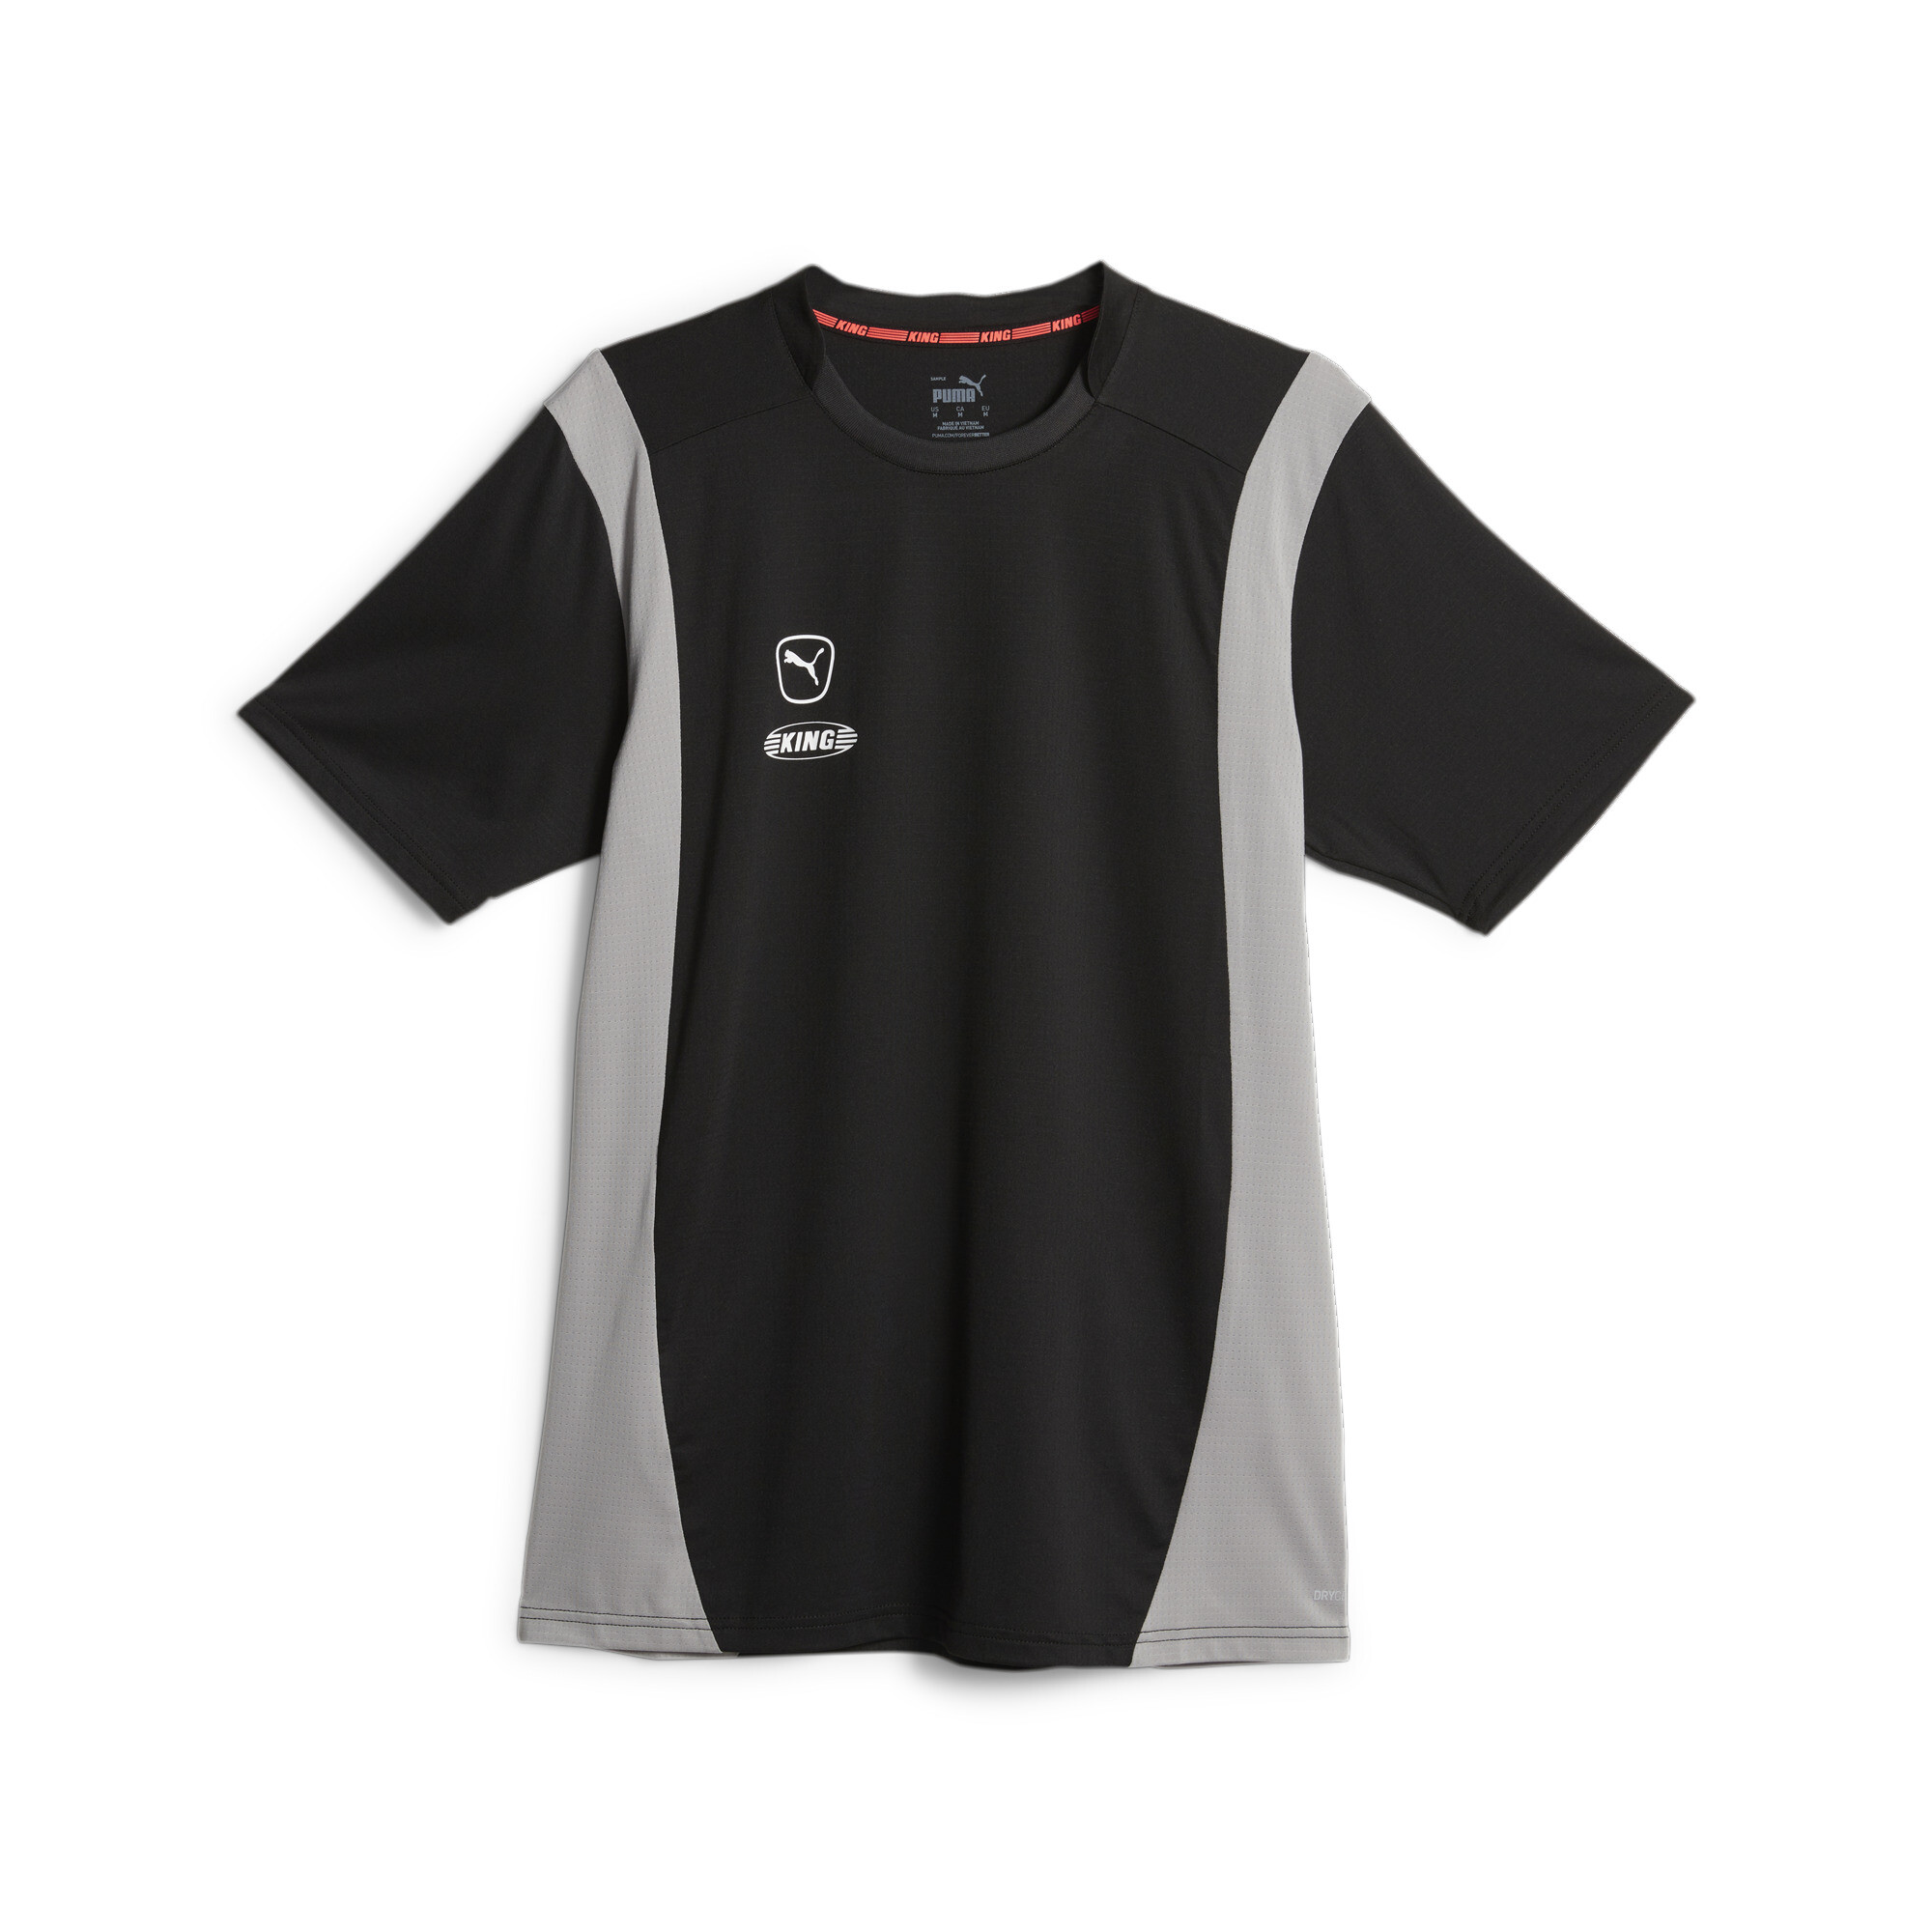 プーマ メンズ サッカー キング プロ Tシャツ メンズ PUMA Black-Concrete Gray ｜PUMA.comの画像